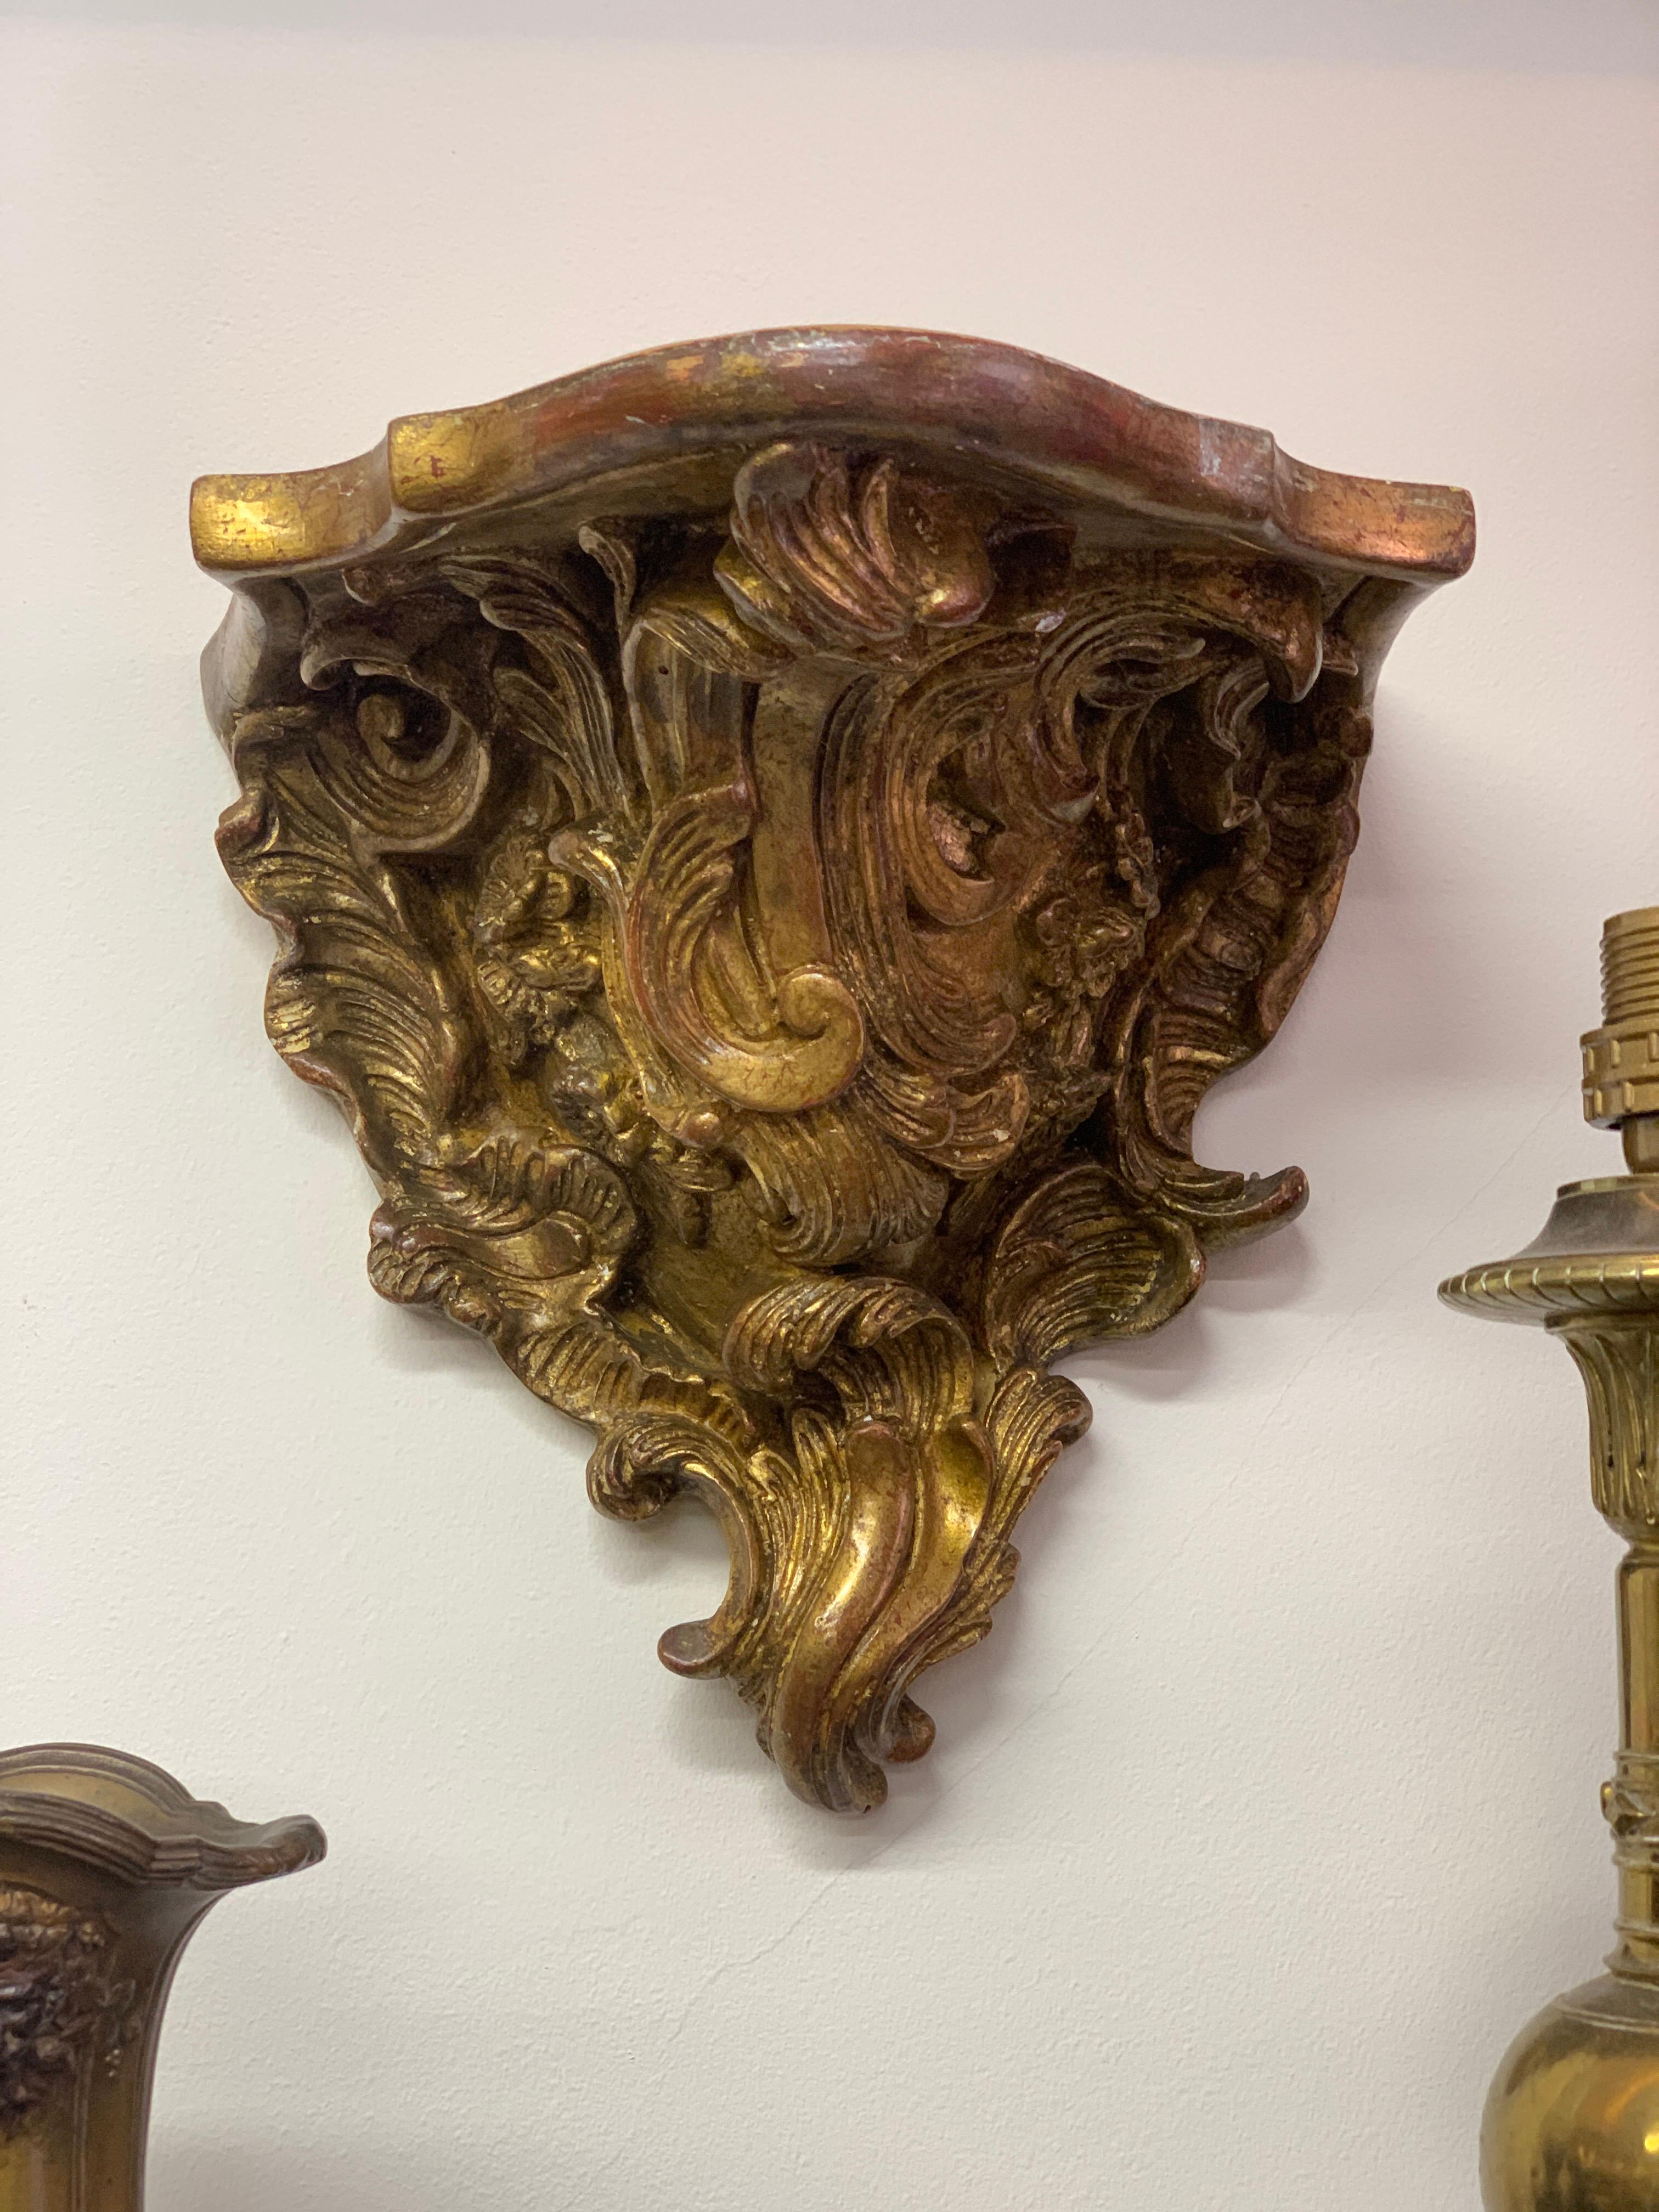 wandkonsolen aus dem 18. Jahrhundert aus Frankreich. Wunderschön aus vergoldetem Holz gefertigt und mit Rokoko-Einflüssen verziert. Die Qualität der Schnitzerei und Vergoldung ist sehr gut und sie passen perfekt an jede Wand, besonders unter Säulen.